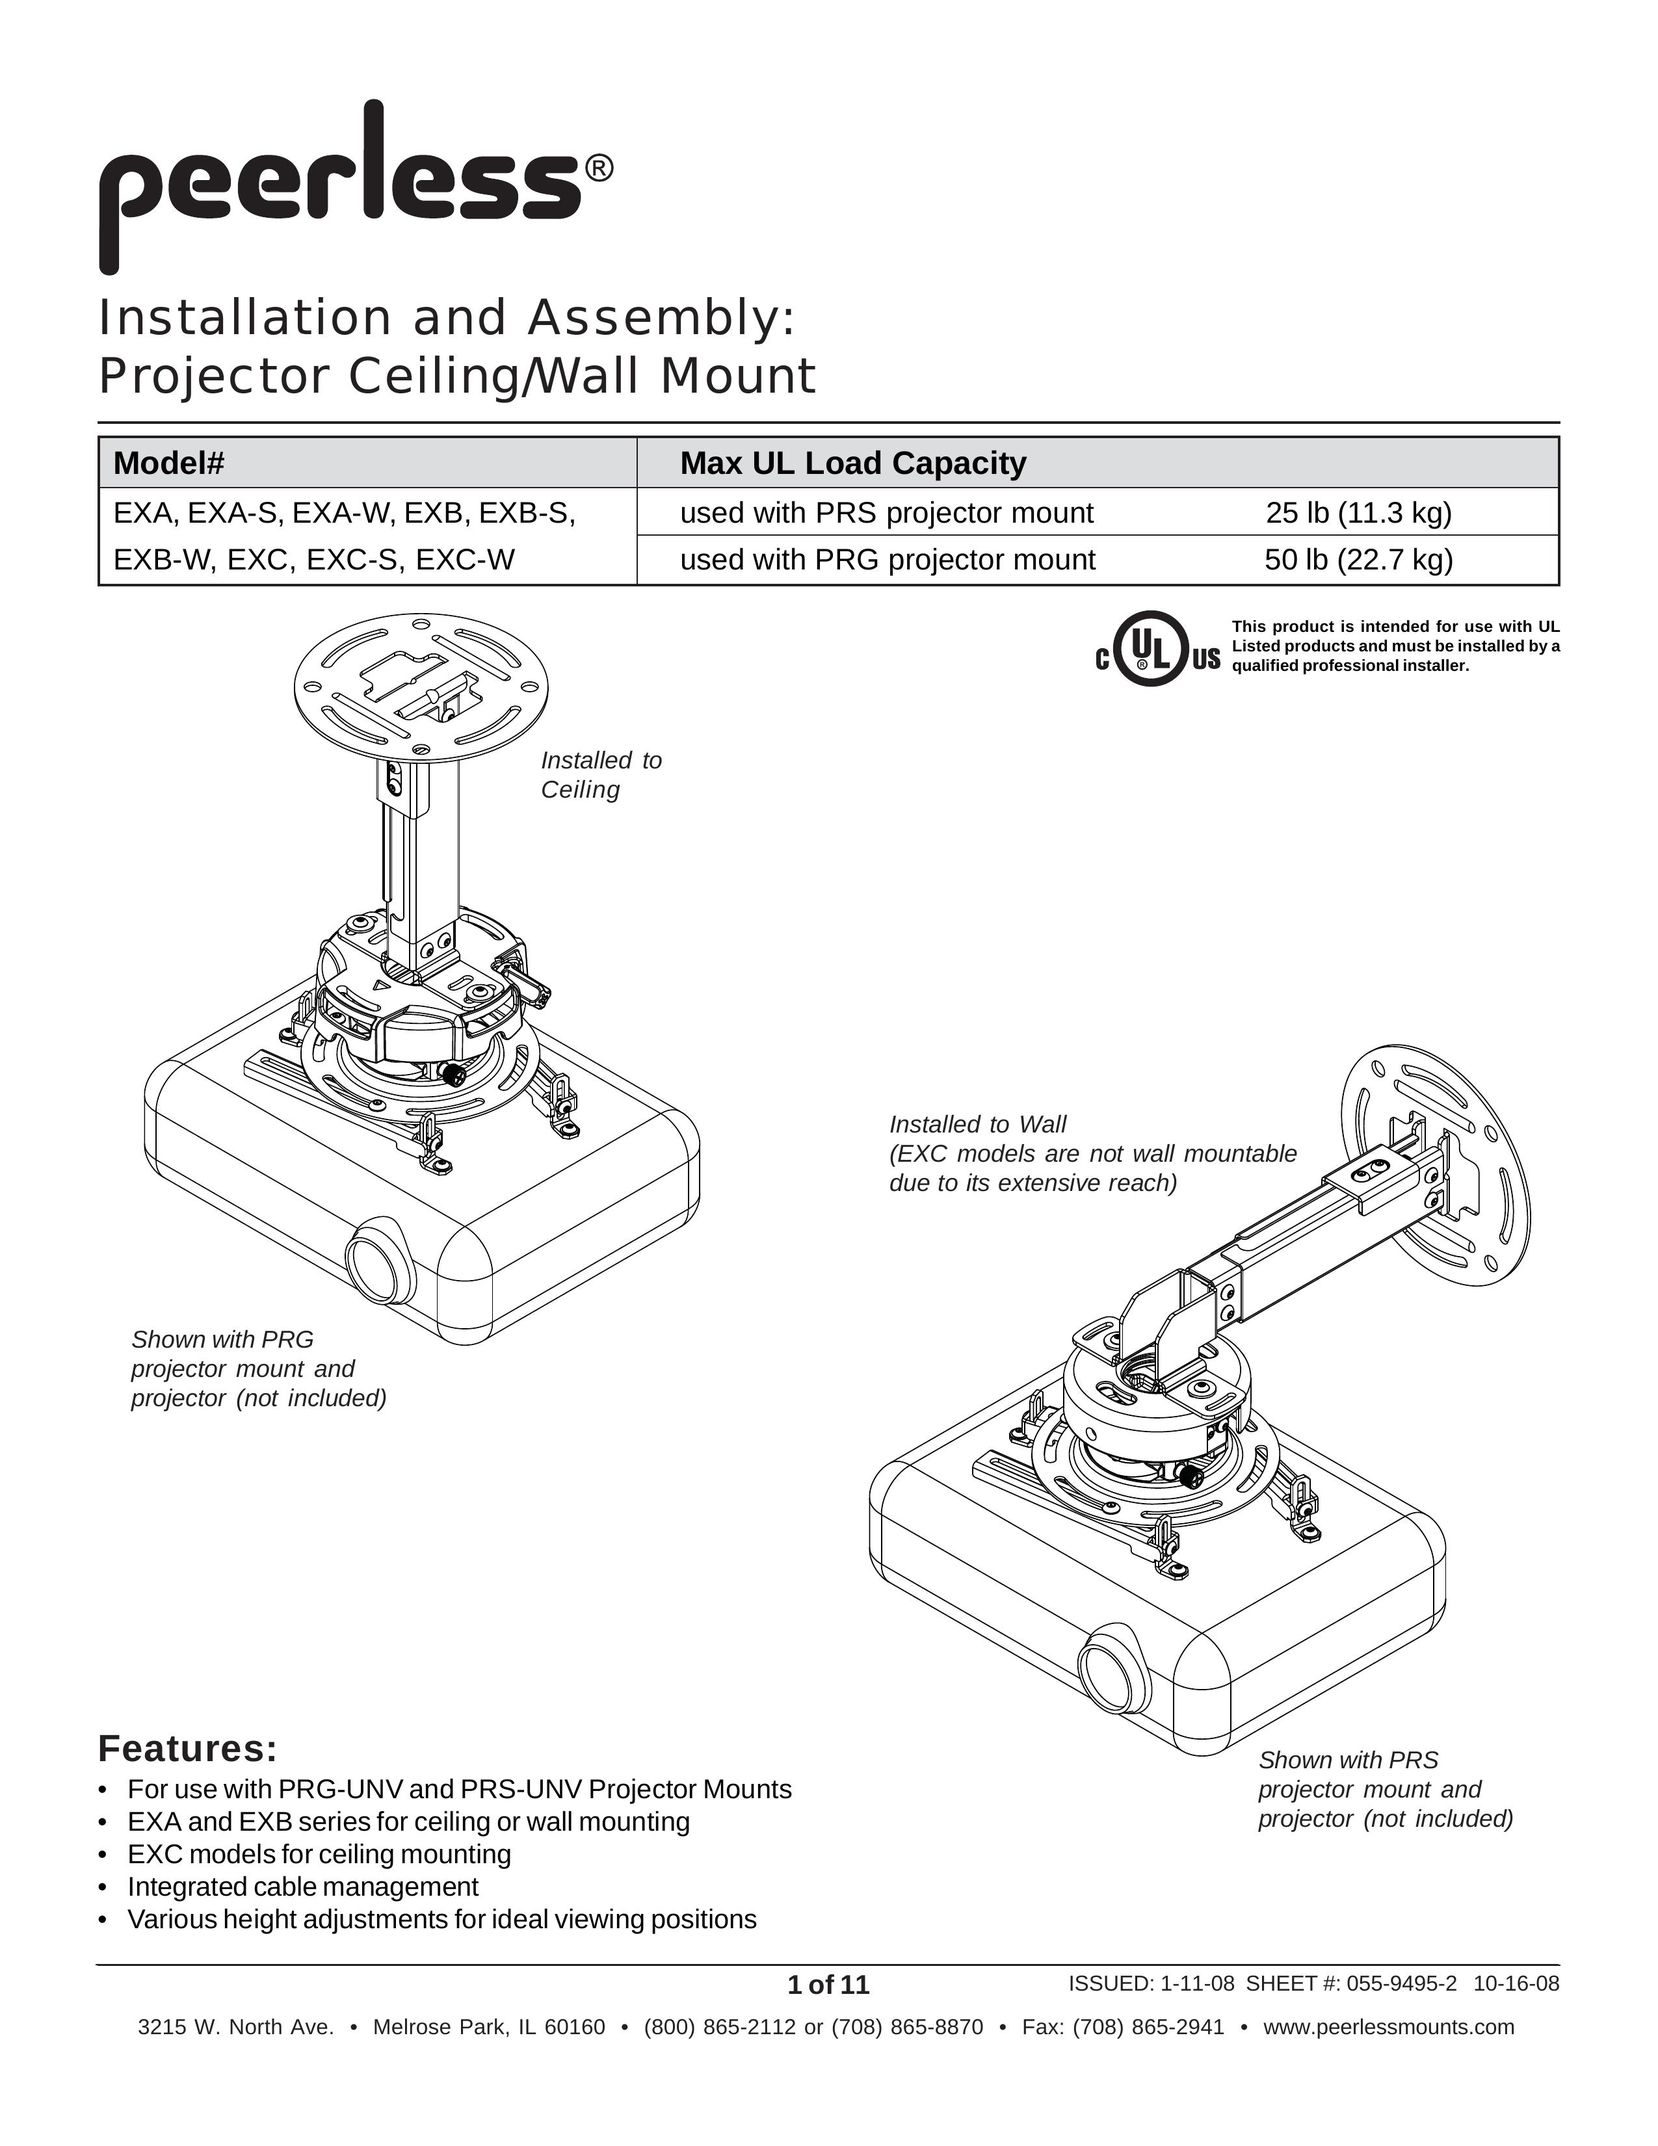 Peerless Industries EXC-W Projector User Manual